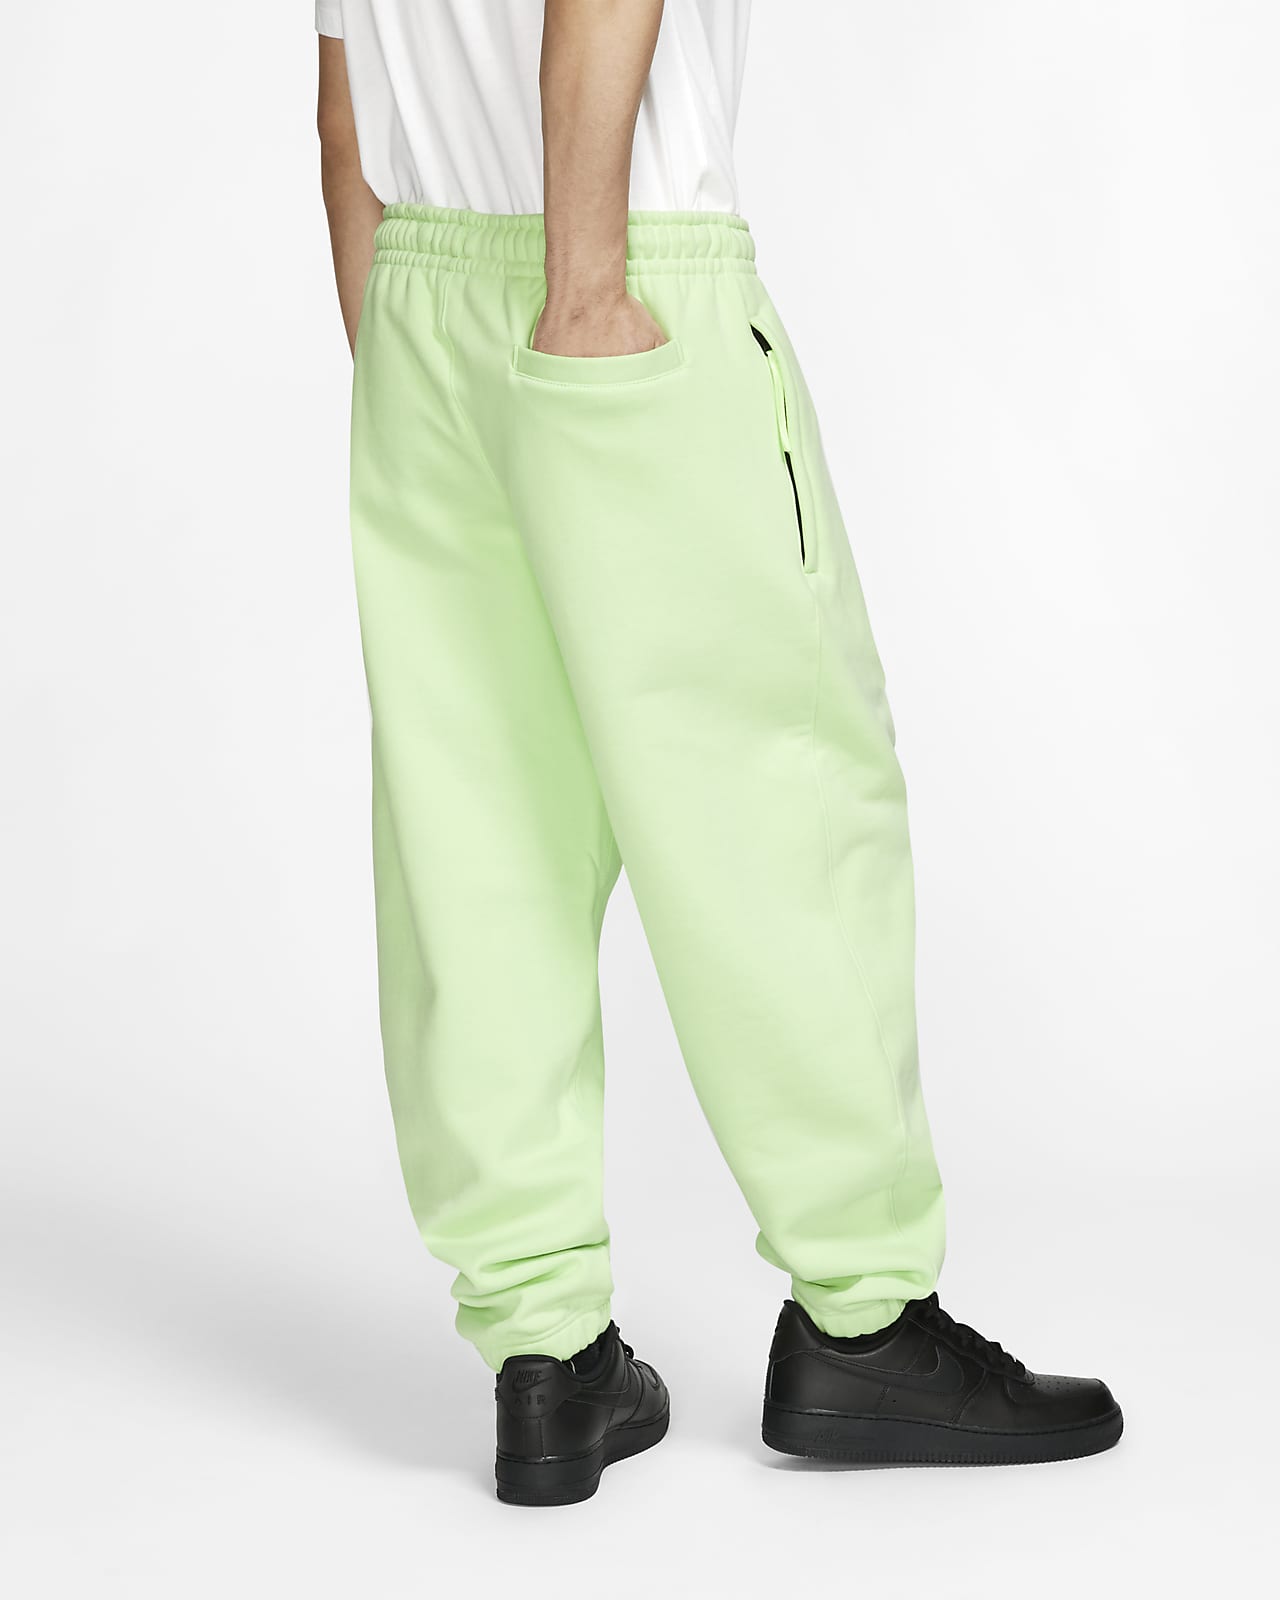 NikeLab Collection Men's Fleece Pants 